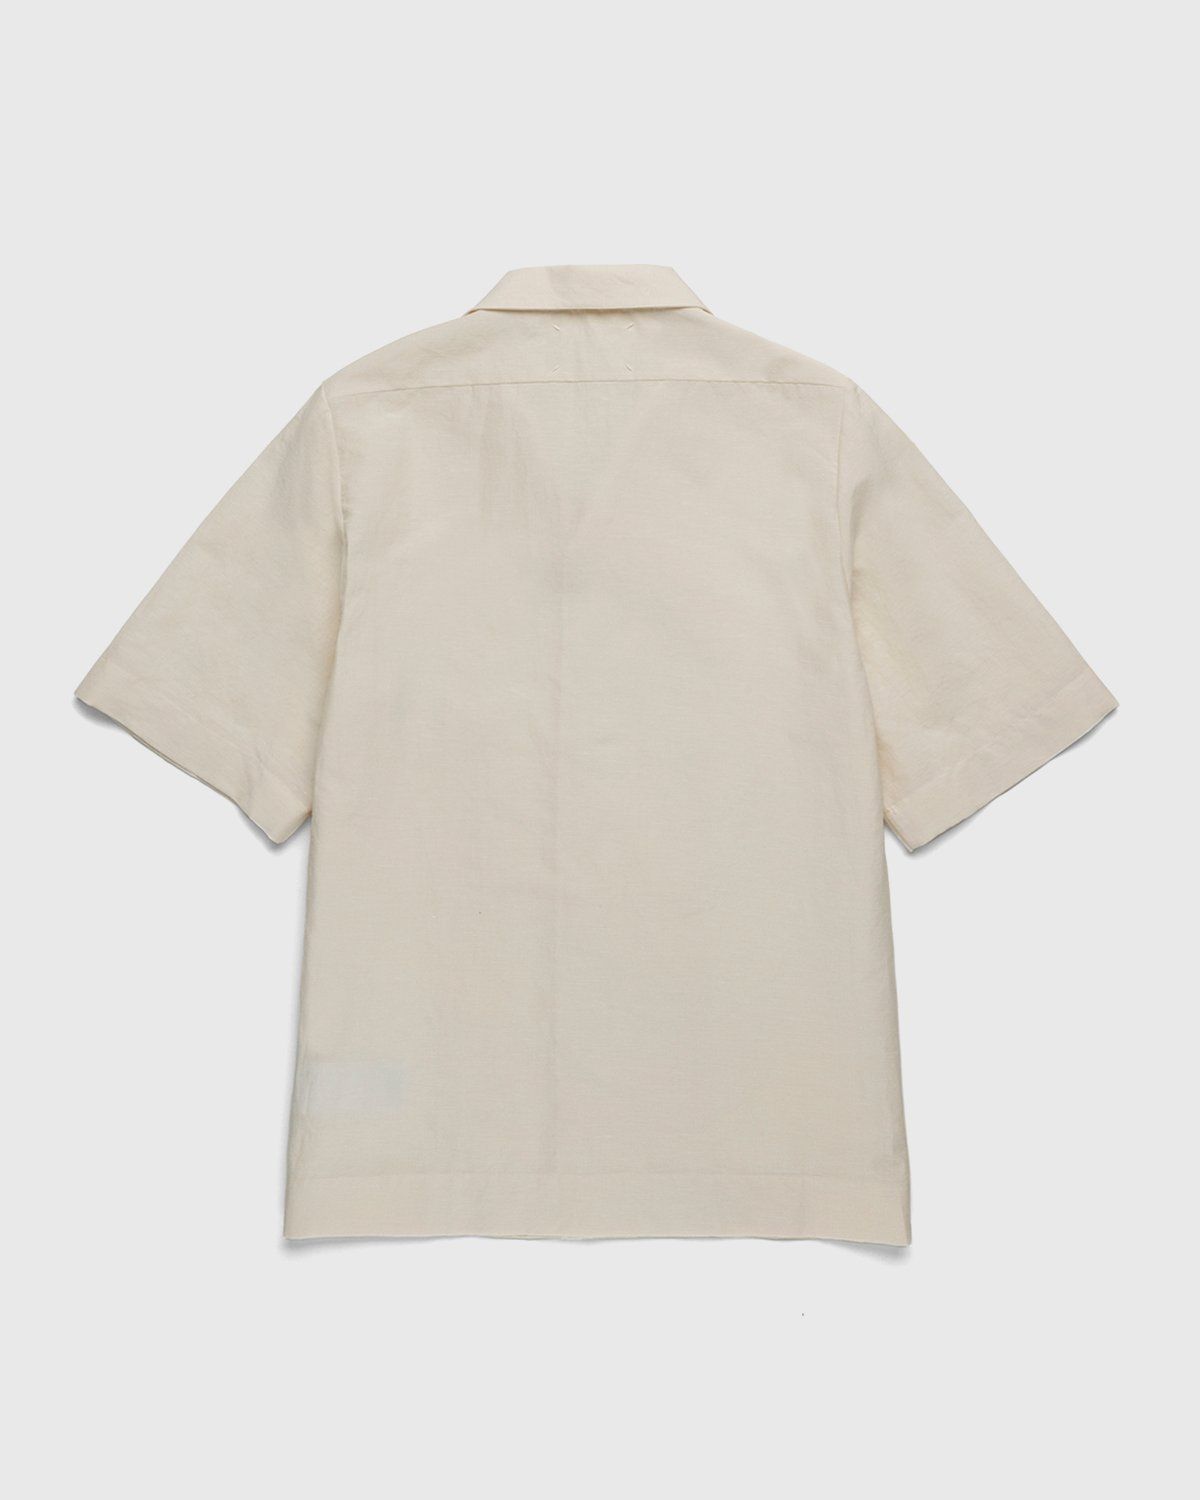 Maison Margiela – Ivory Button-Up Shirt Beige - Shortsleeve Shirts - White - Image 2